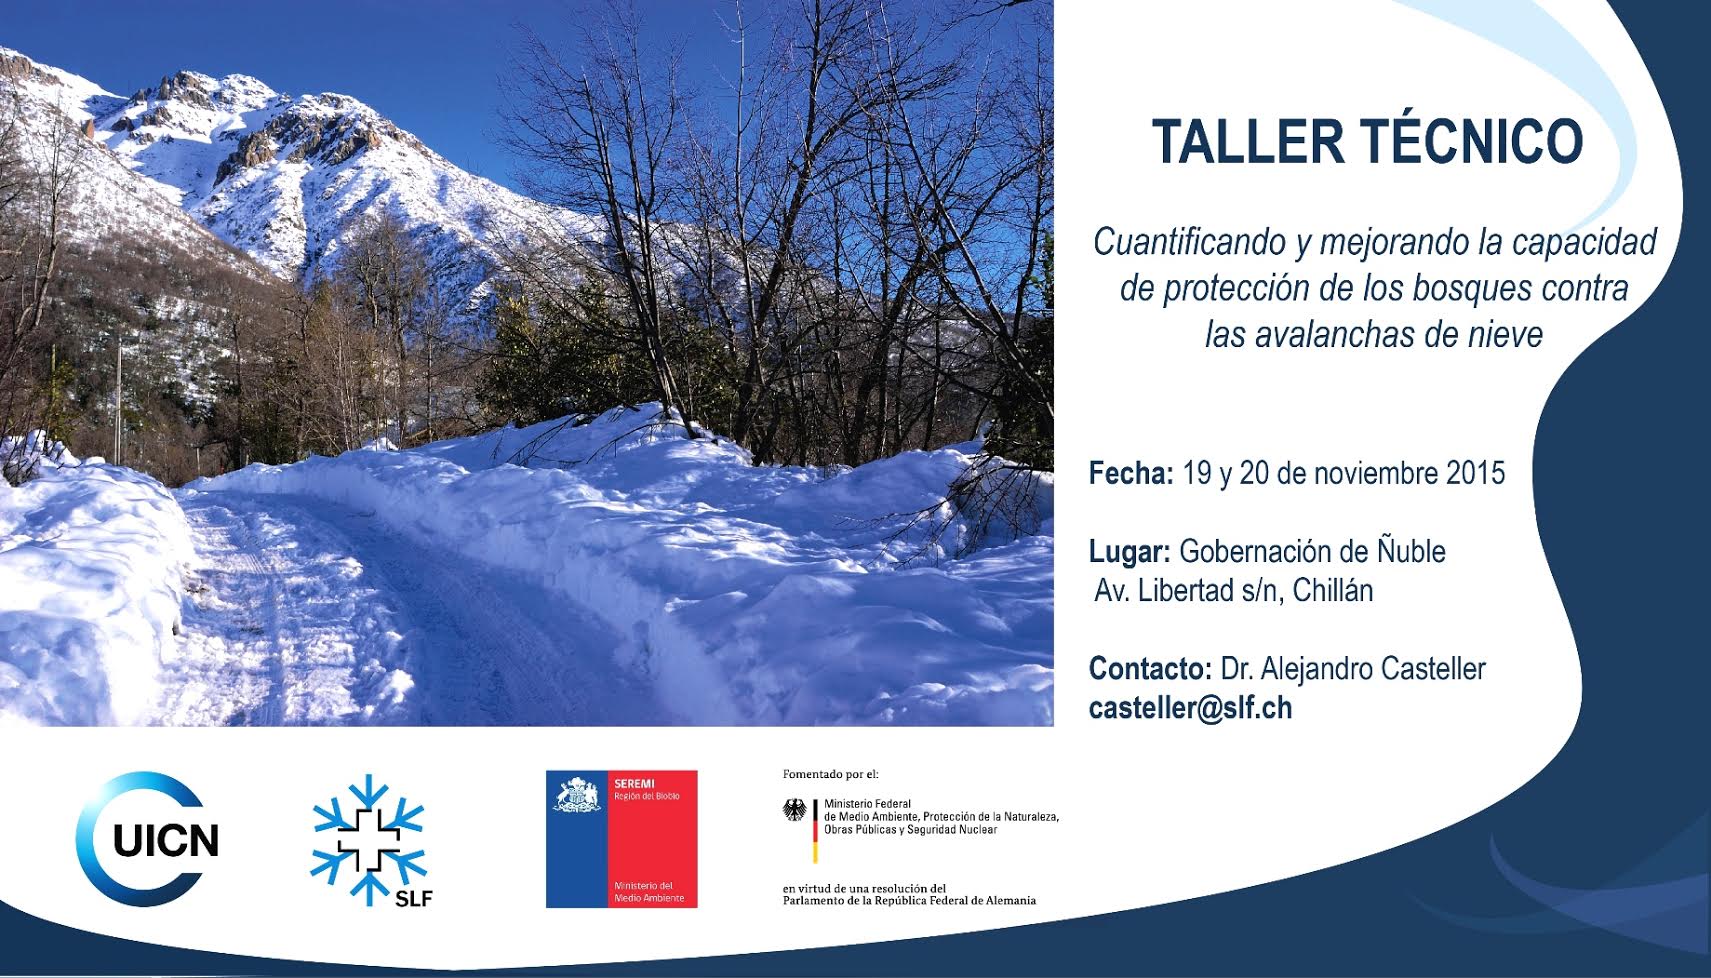 Taller Técnico: Protección de los bosques contra las avalanchas de nieve